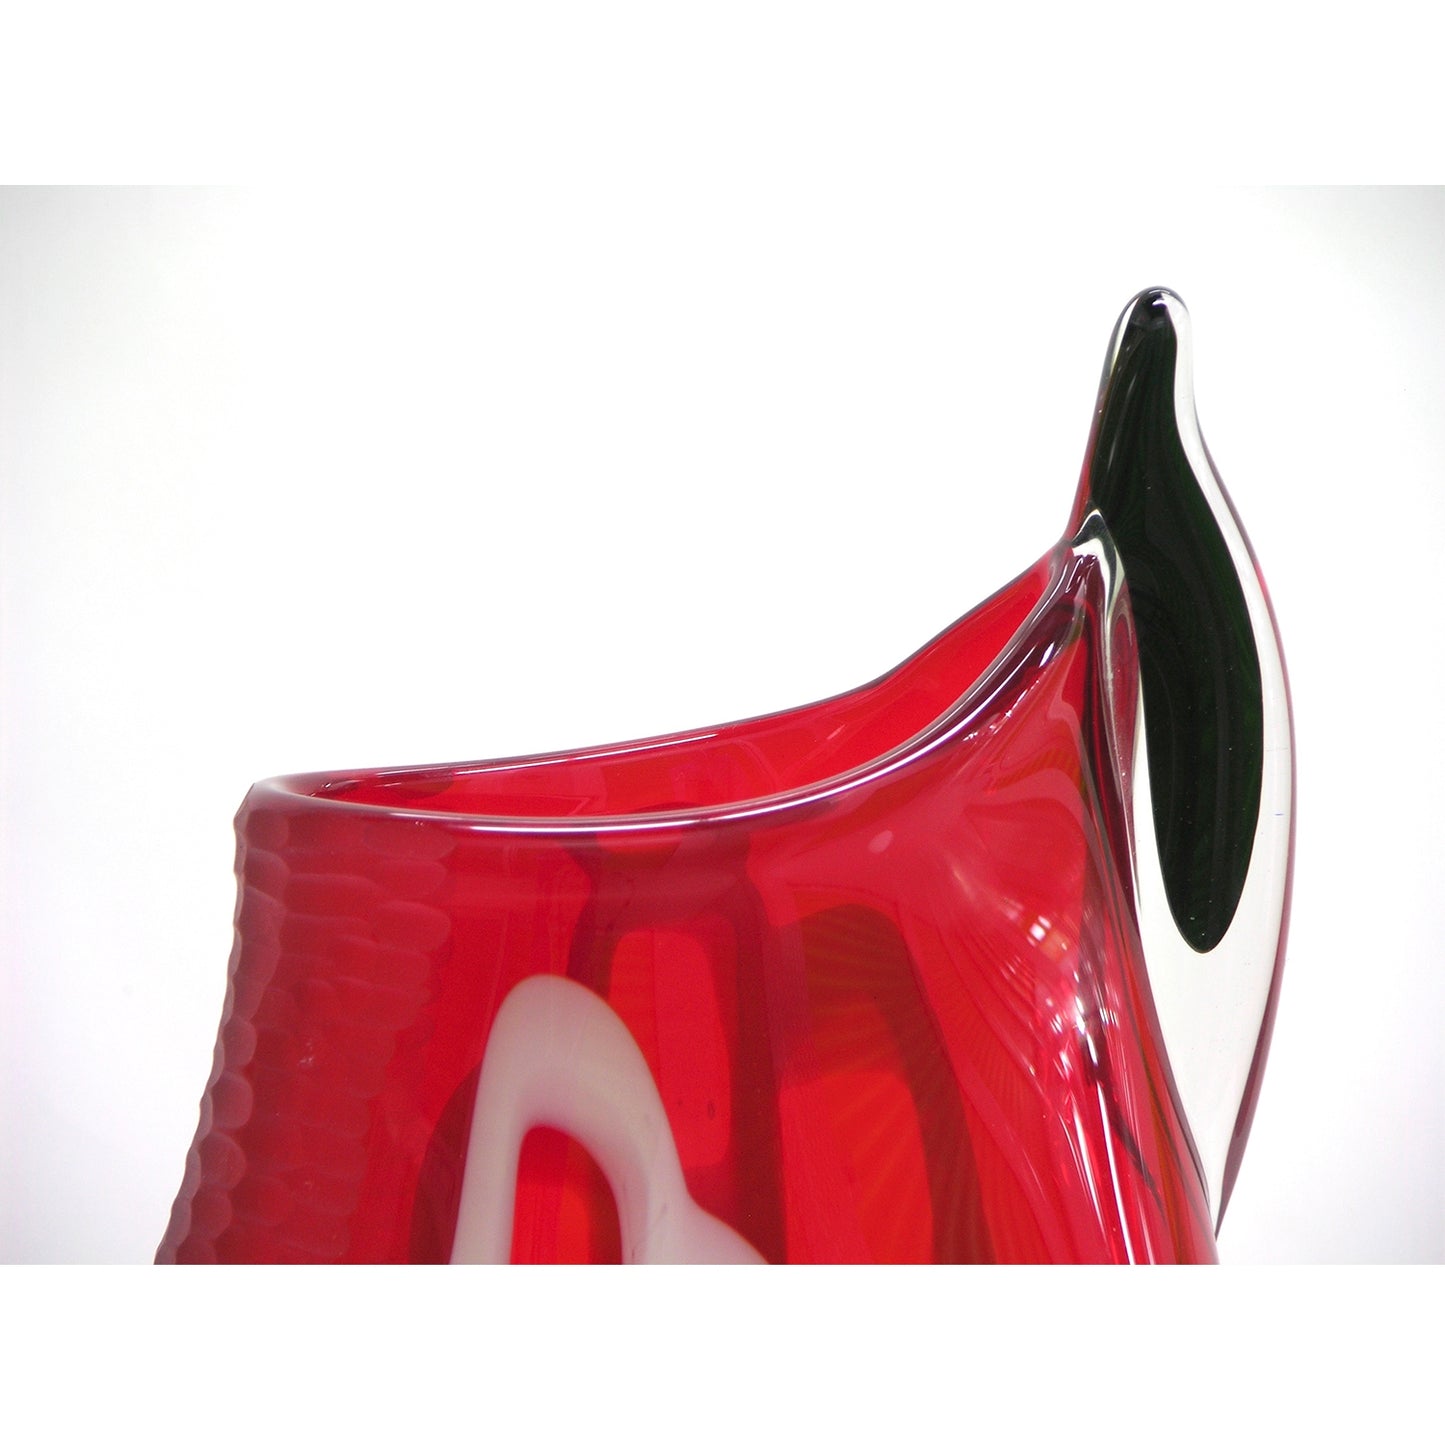 Alberto Dona 1980s Modern Red and Black Murano Glass Vase with White Murrine